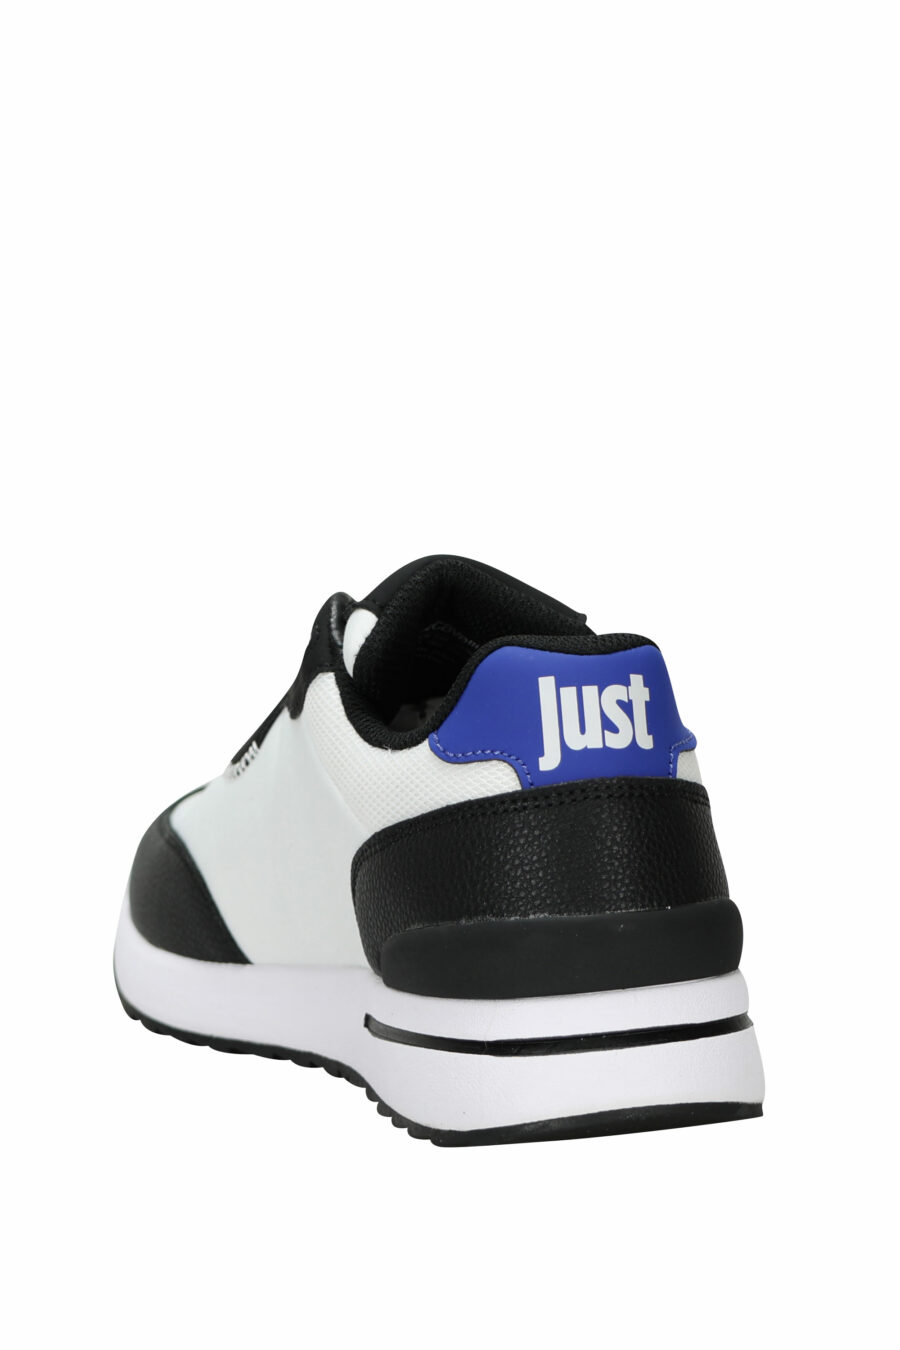 Zapatillas negras con logo circular "c" blanco y suela blanca - 8052672738400 3